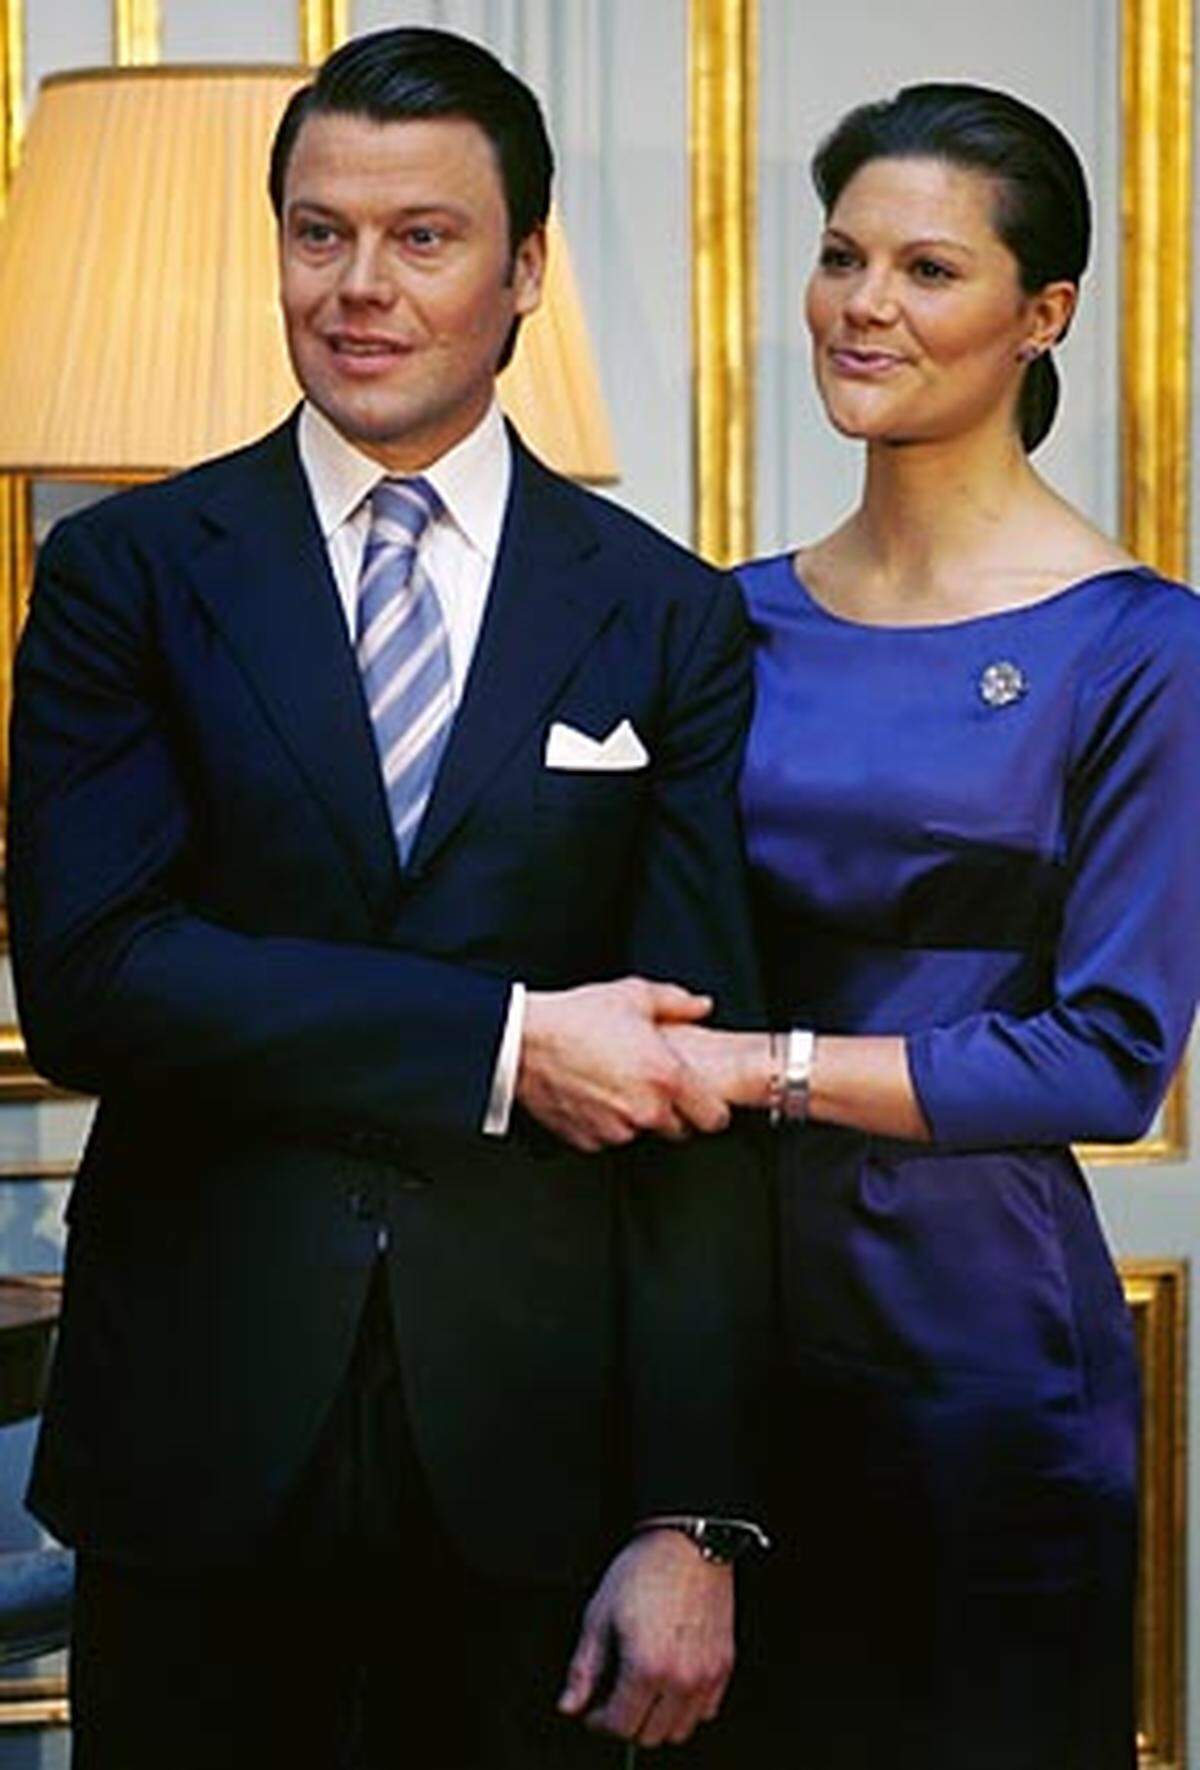 Nach der Eheschließung wird Westling den Titel "Prinz" tragen, den ihm der Schwiegervater zur Vermählung verleiht: Prinz Daniel, Herzog von Västergötland, soll er offiziell heißen, wenn das Paar aus dem "Storkyrka"-Dom tritt, wo schwedische Königshochzeiten traditionell stattfinden.